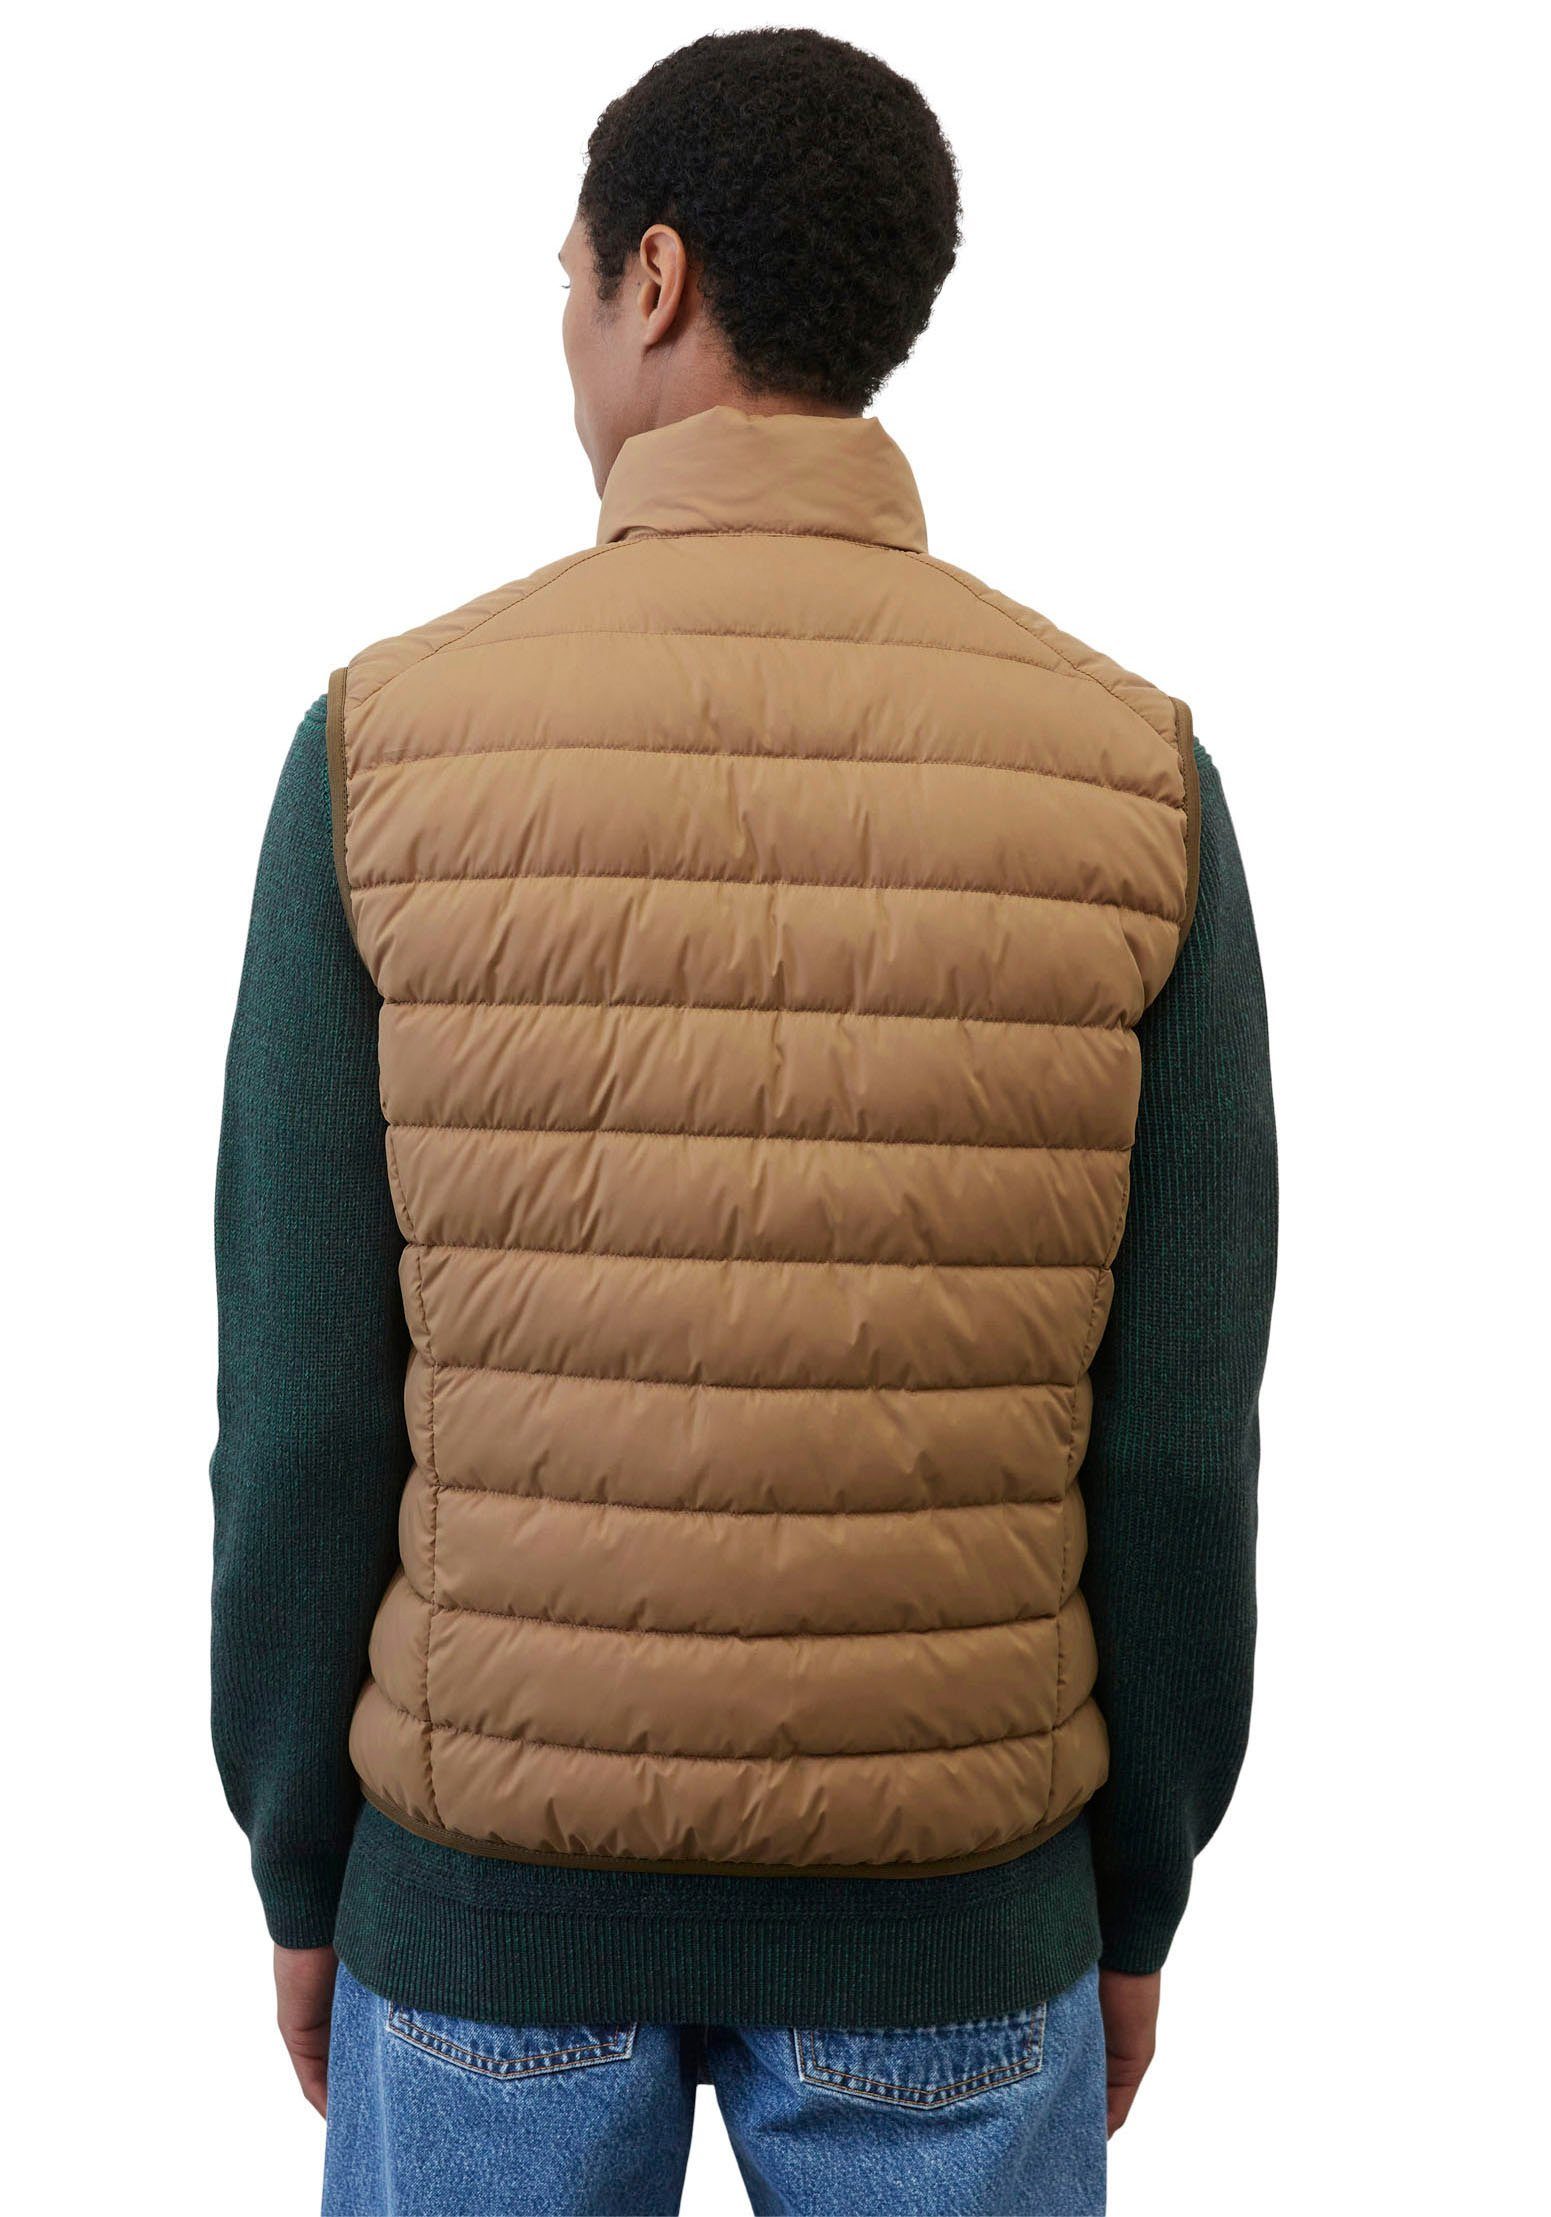 Marc O'Polo Steppweste Vest, mit sdnd, brown collar casabella Oberfläche wasserabweisender stand-up